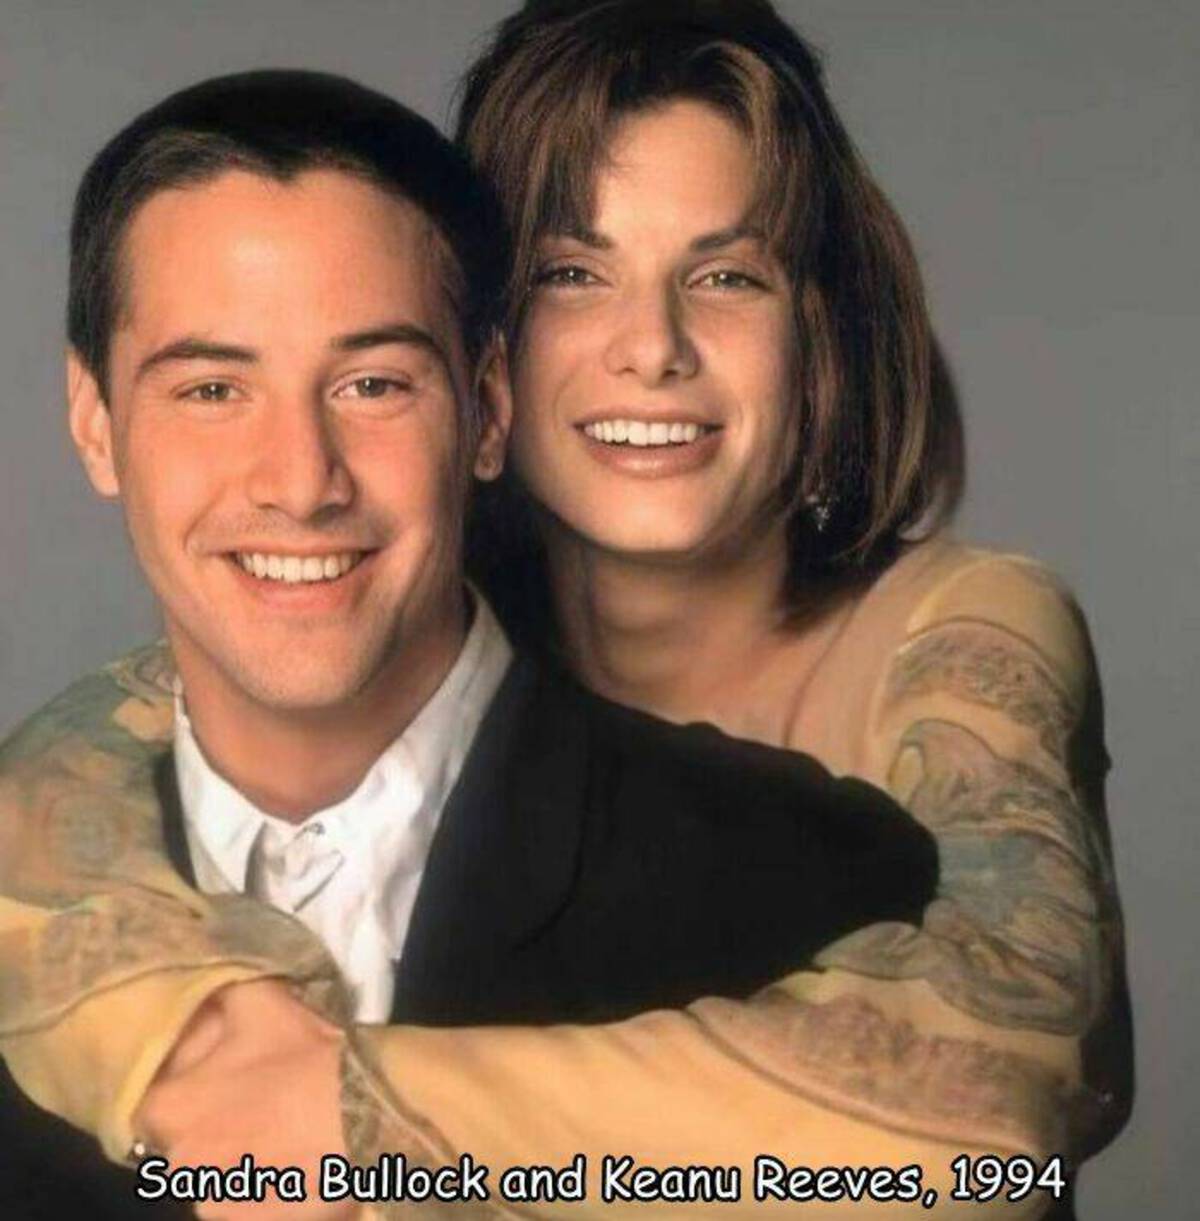 sandra bullock keanu reeves 1994 - Sandra Bullock and Keanu Reeves, 1994